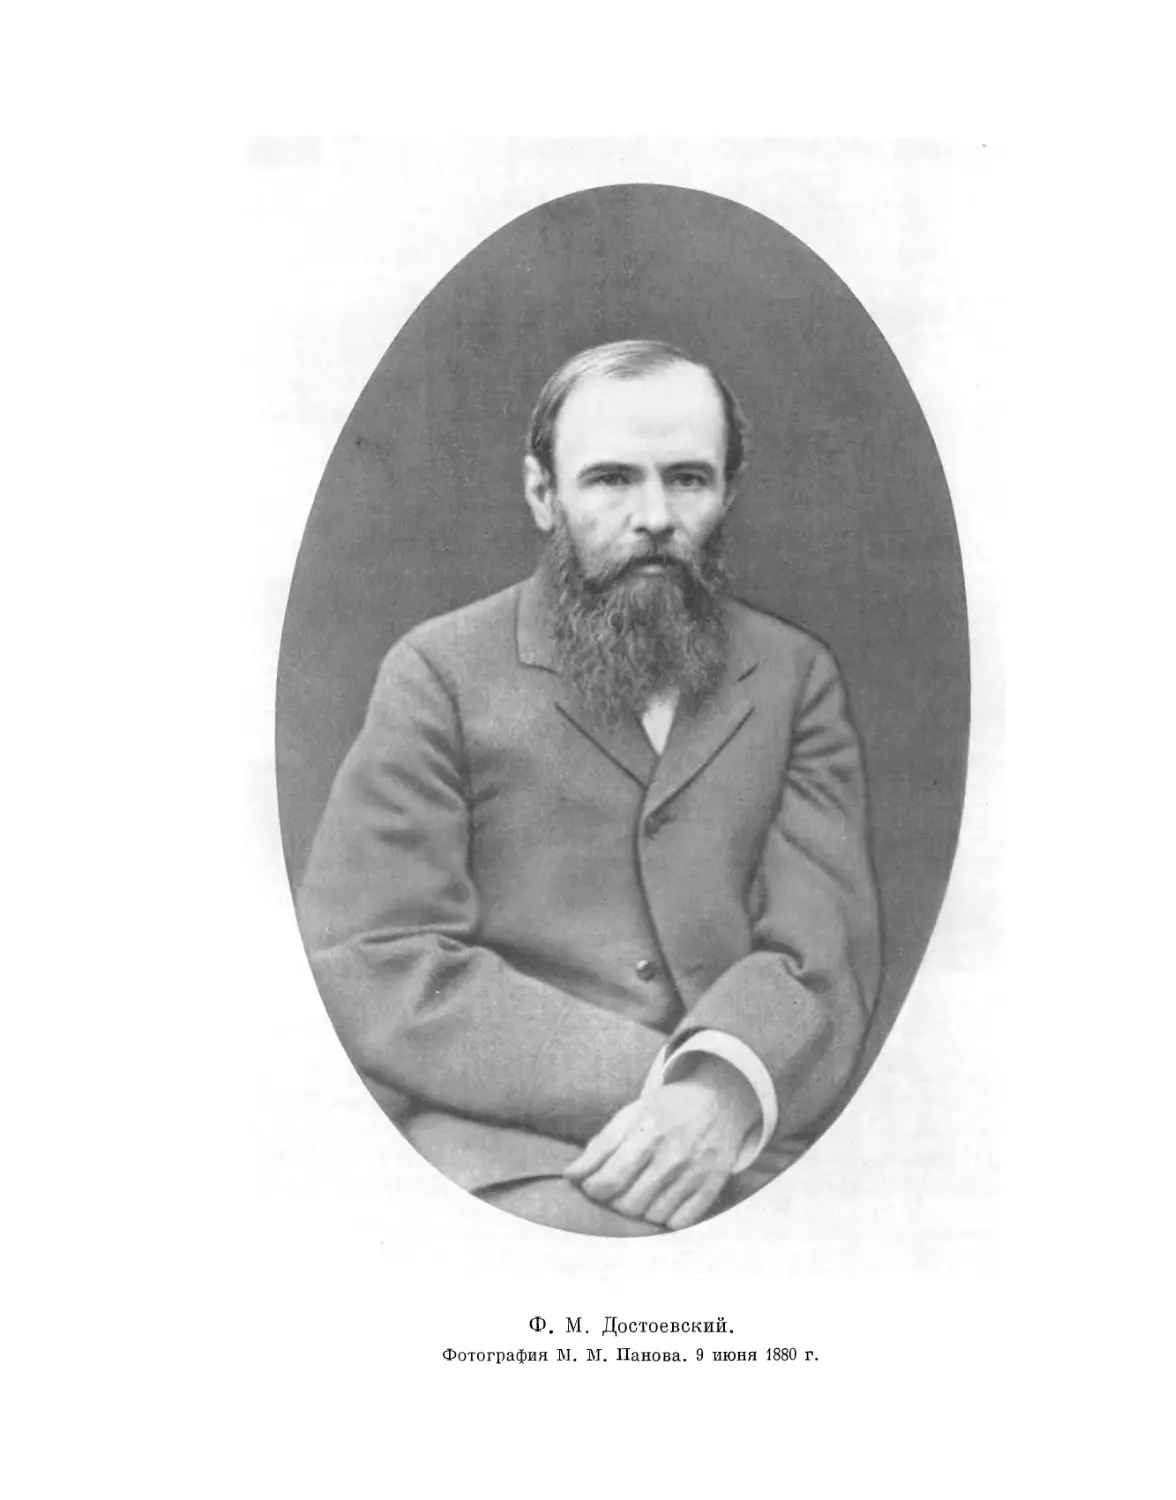 Вклейка. Ф.М. Достоевский. Фотография М.М. Панова. 9 июня 1880 г.